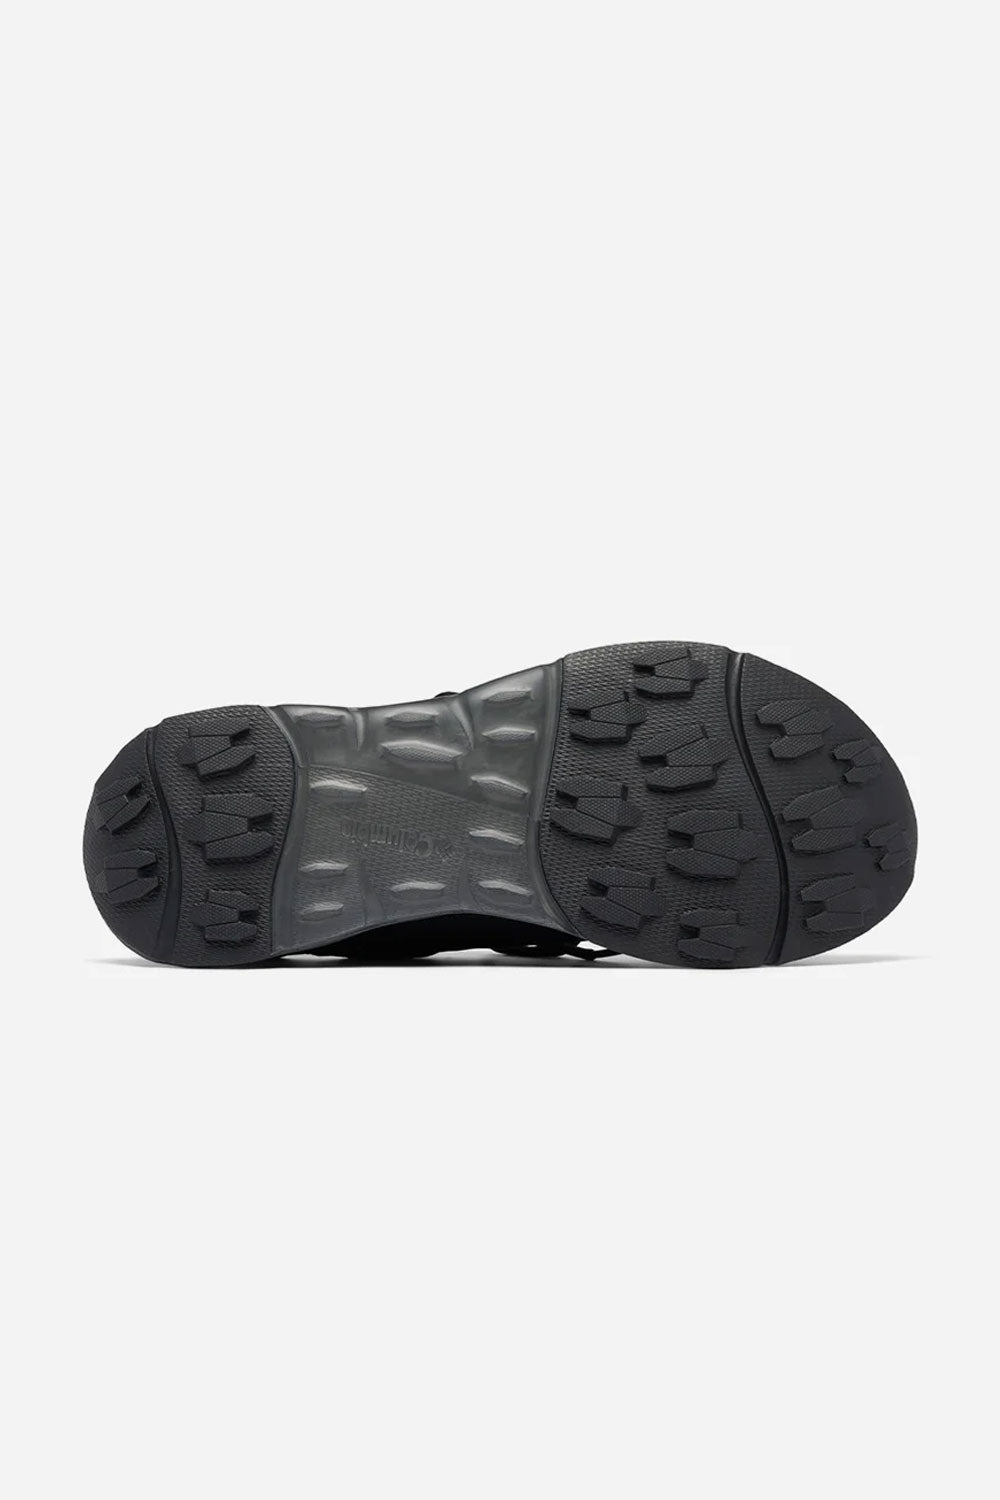 קולומביה נעלי ספורט Drainmaker XTR בצבע שחור לגברים-Columbia-41-נאקו